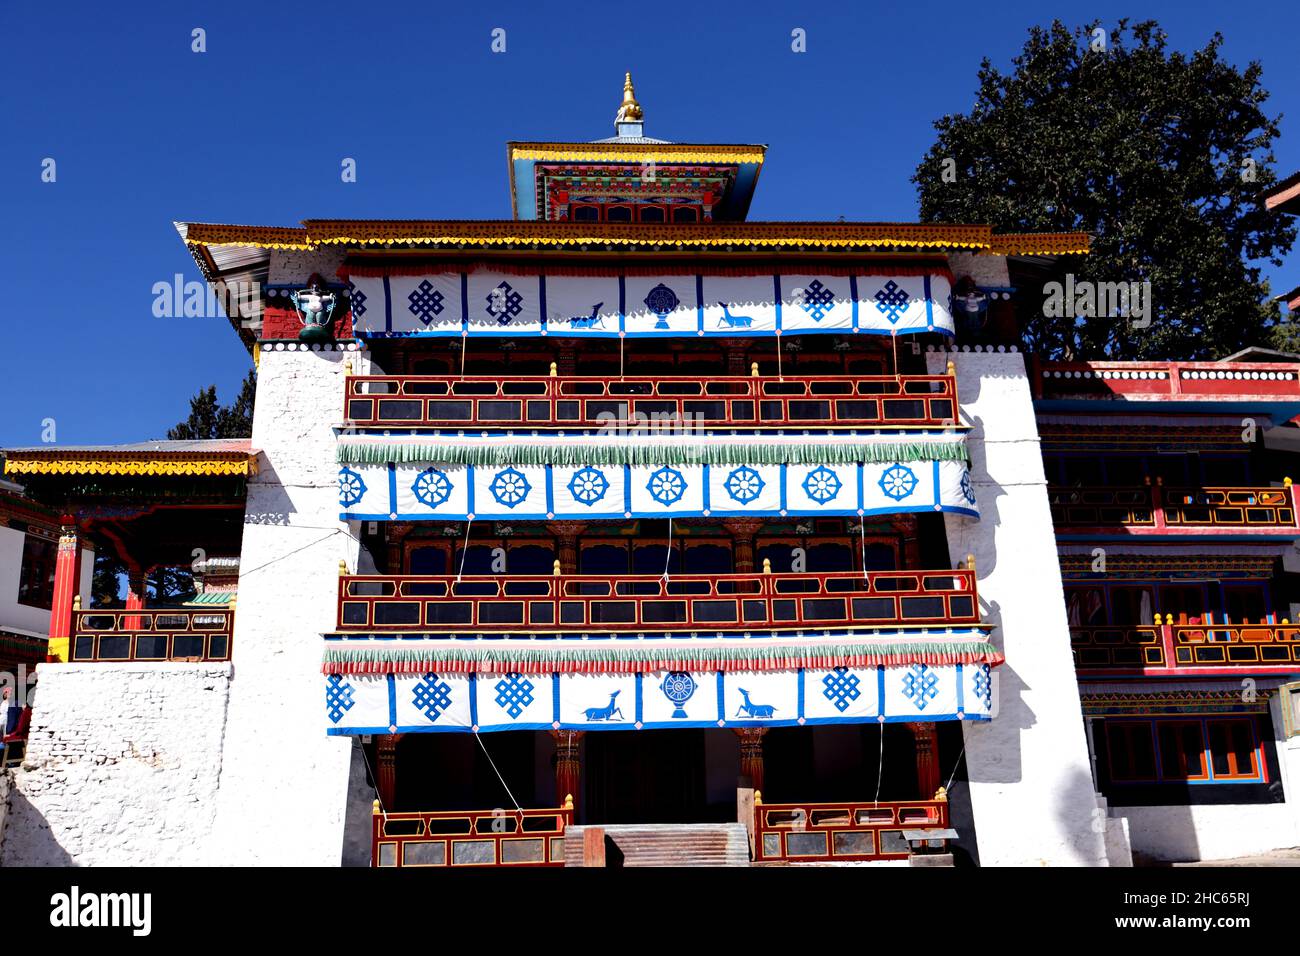 Historisches Tawang Kloster, ältestes Kloster in Indien, Vorderansicht des alten buddhistischen Klosters in Arunachal Prodesh, Nordostindien Touristenattraktio Stockfoto